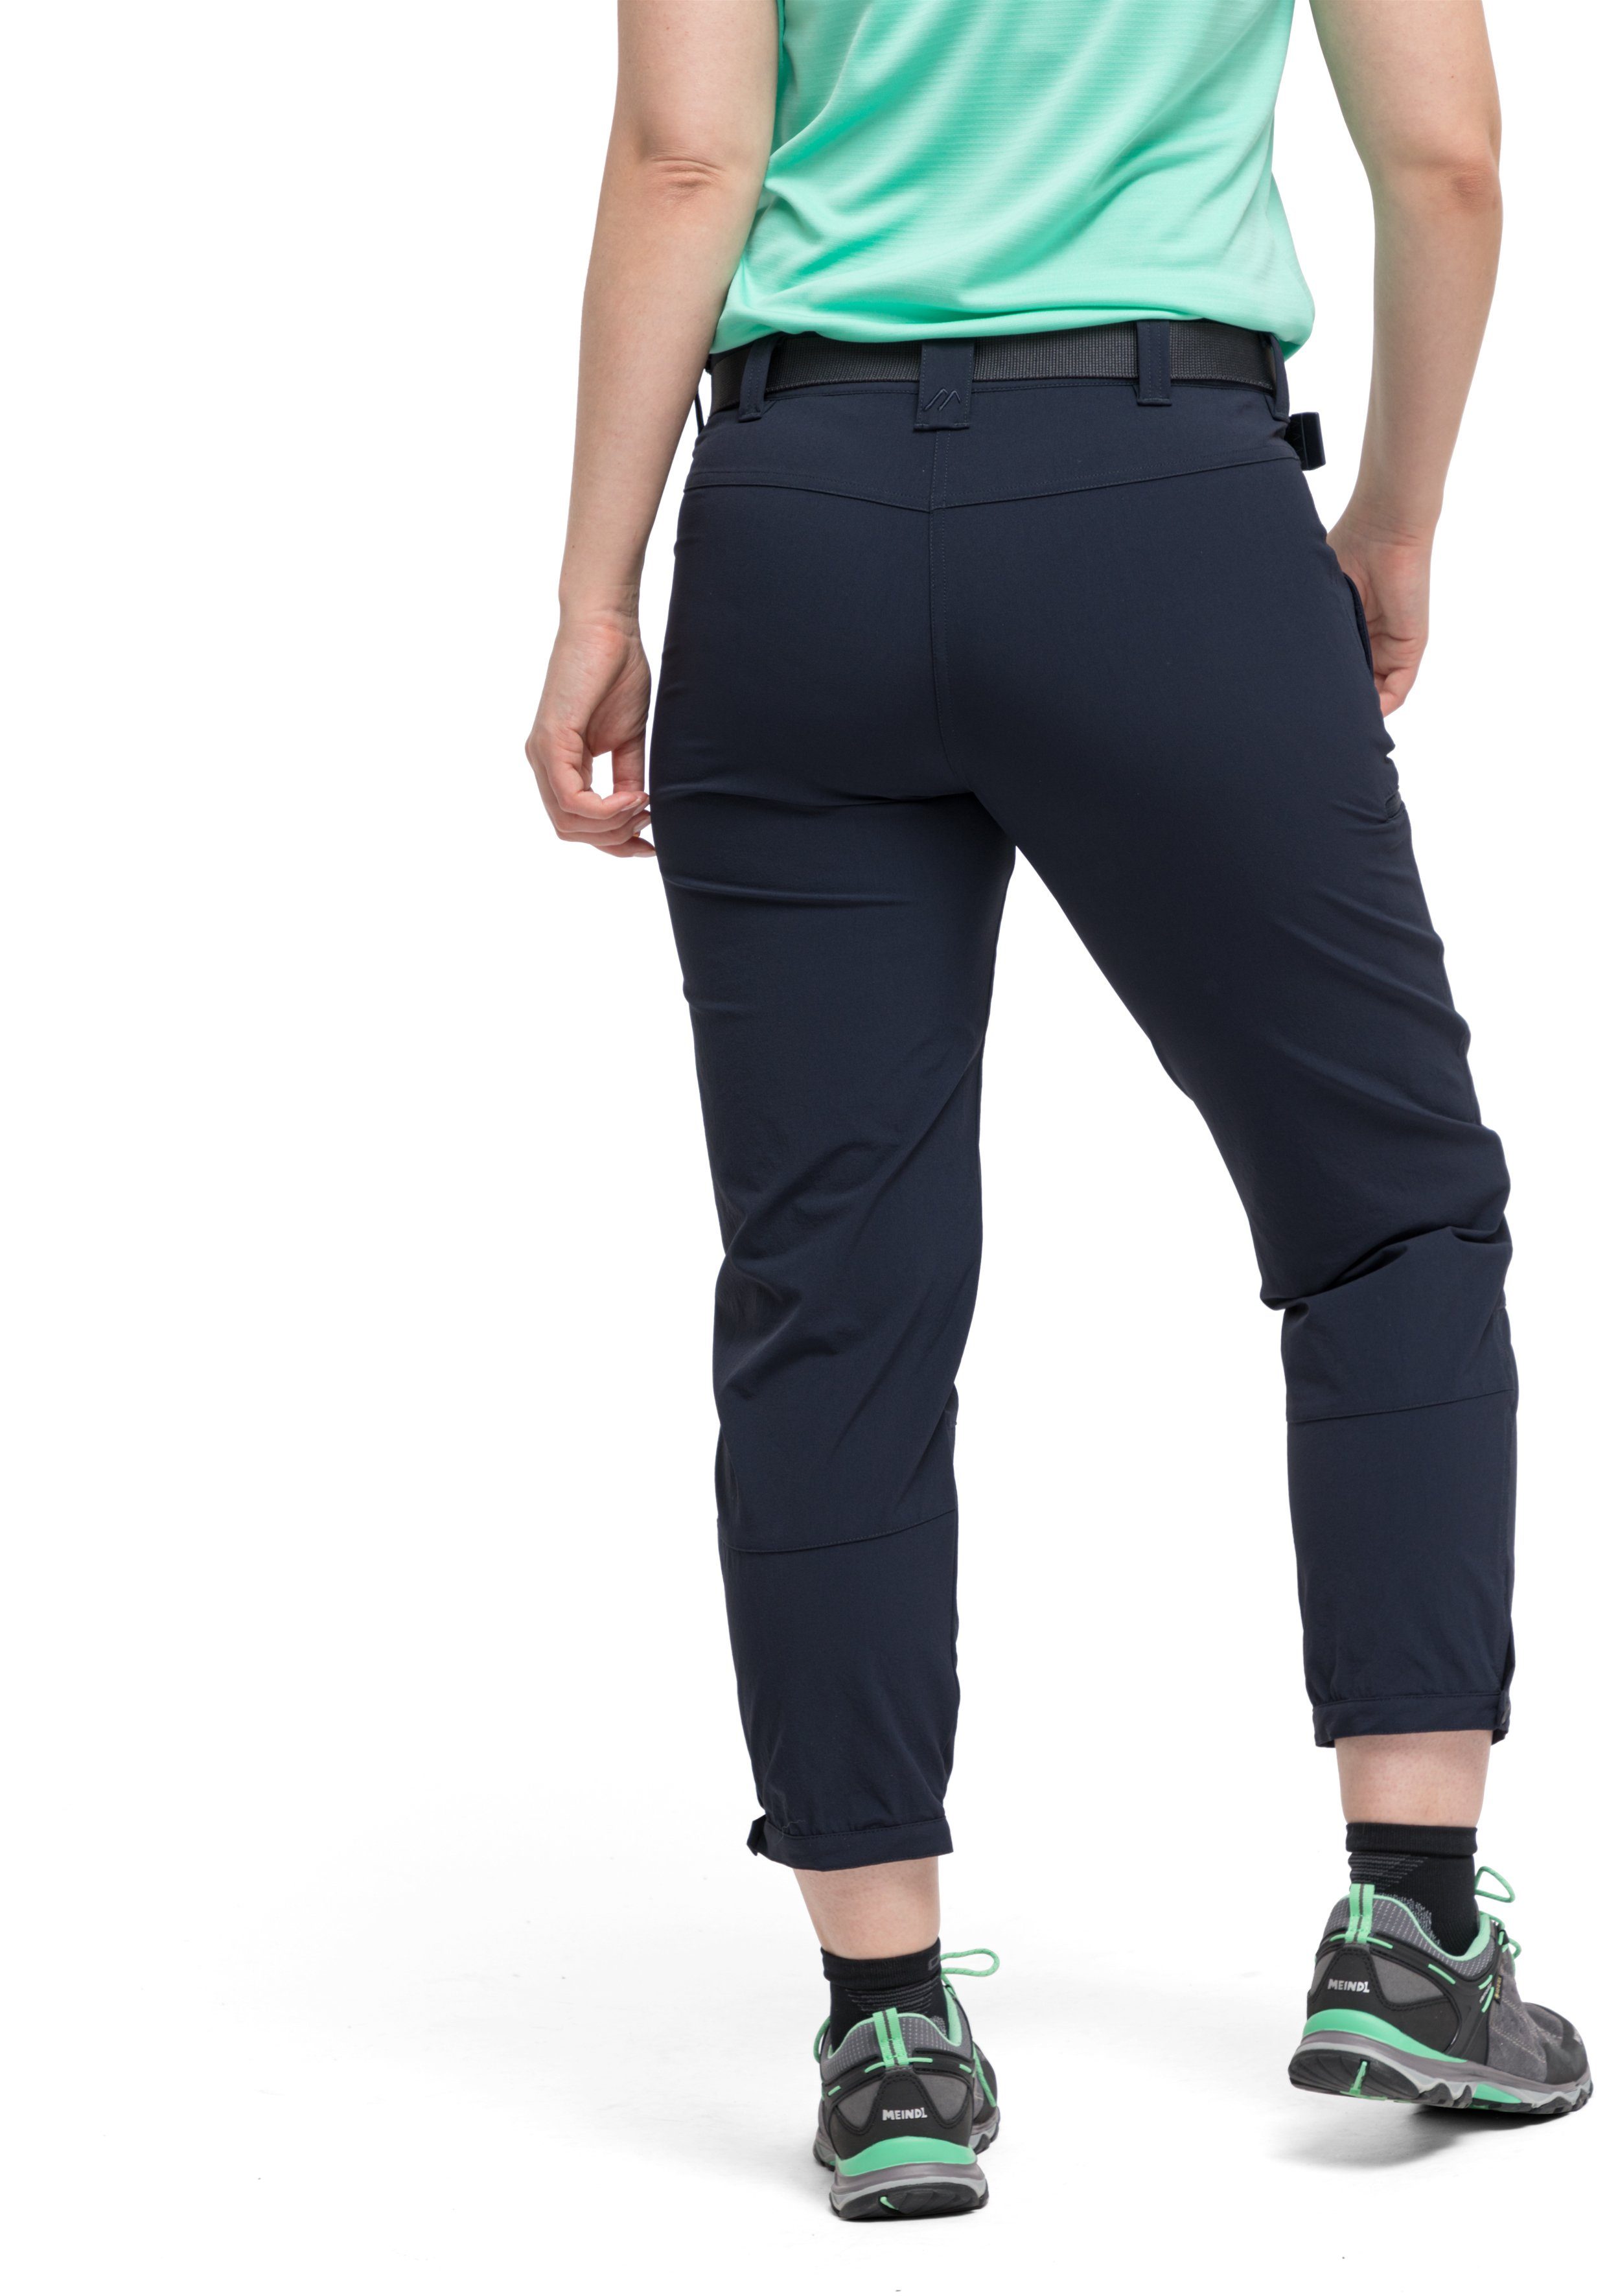 Lulaka elastische Outdoor-Hose Damen atmungsaktive Maier Sports 7/8 Wanderhose, und Funktionshose dunkelblau